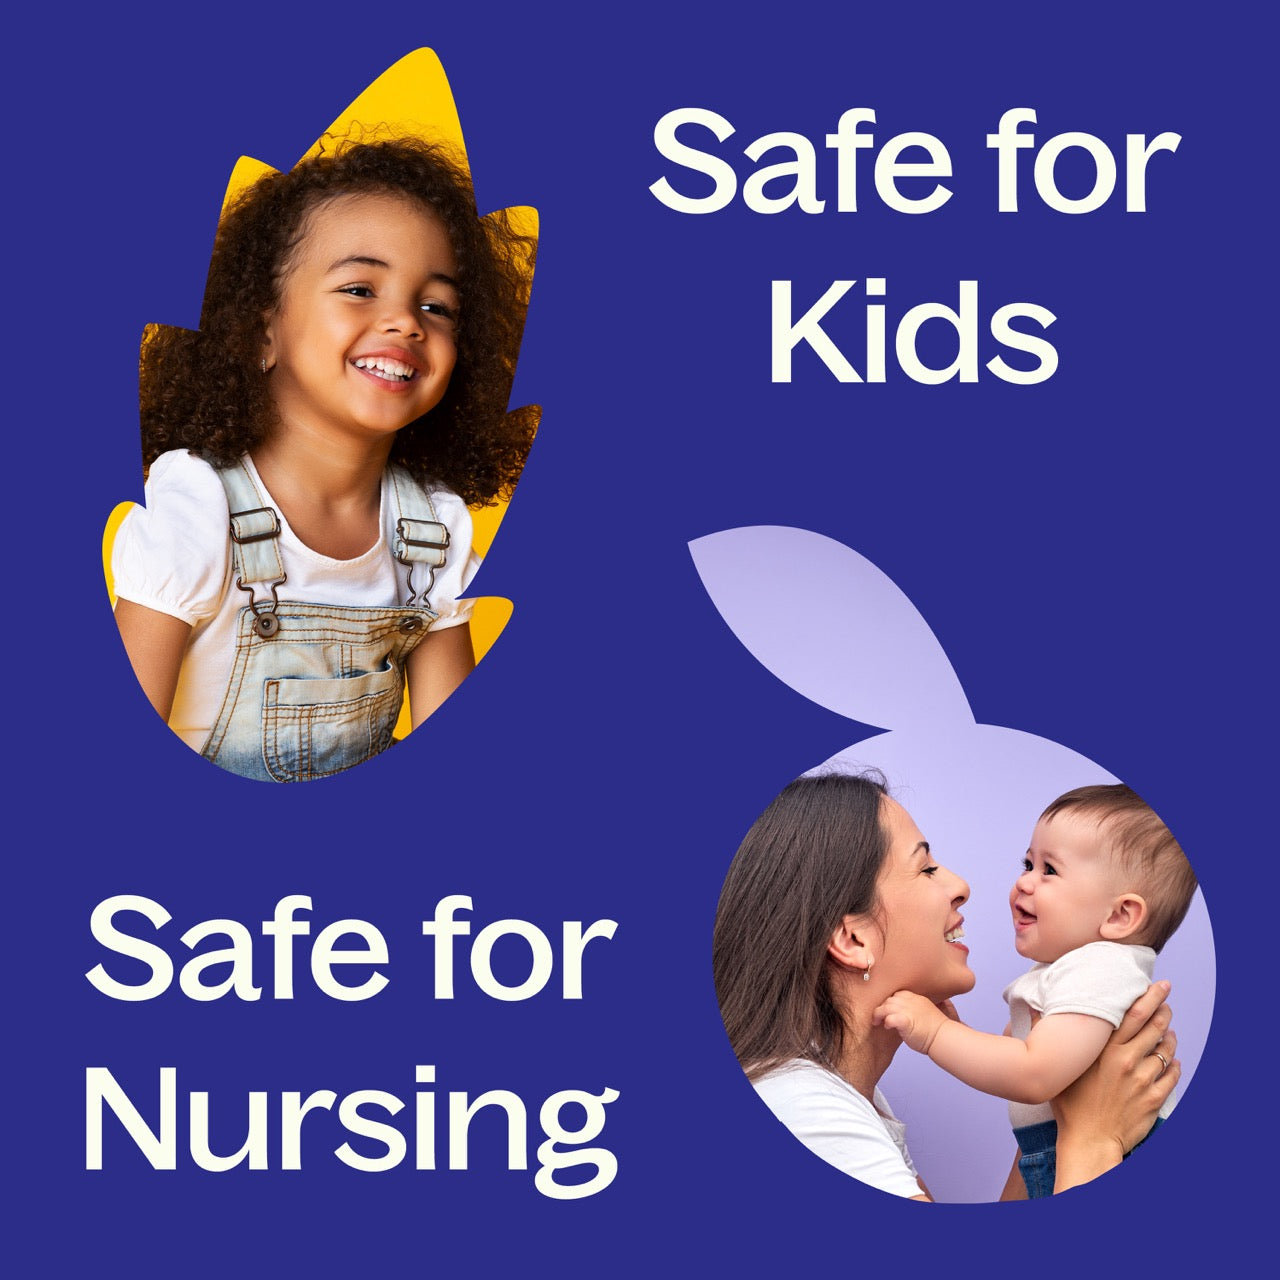 KidSafe Essential Oil Starter Pack Roll-On is safe for kids and nursing moms